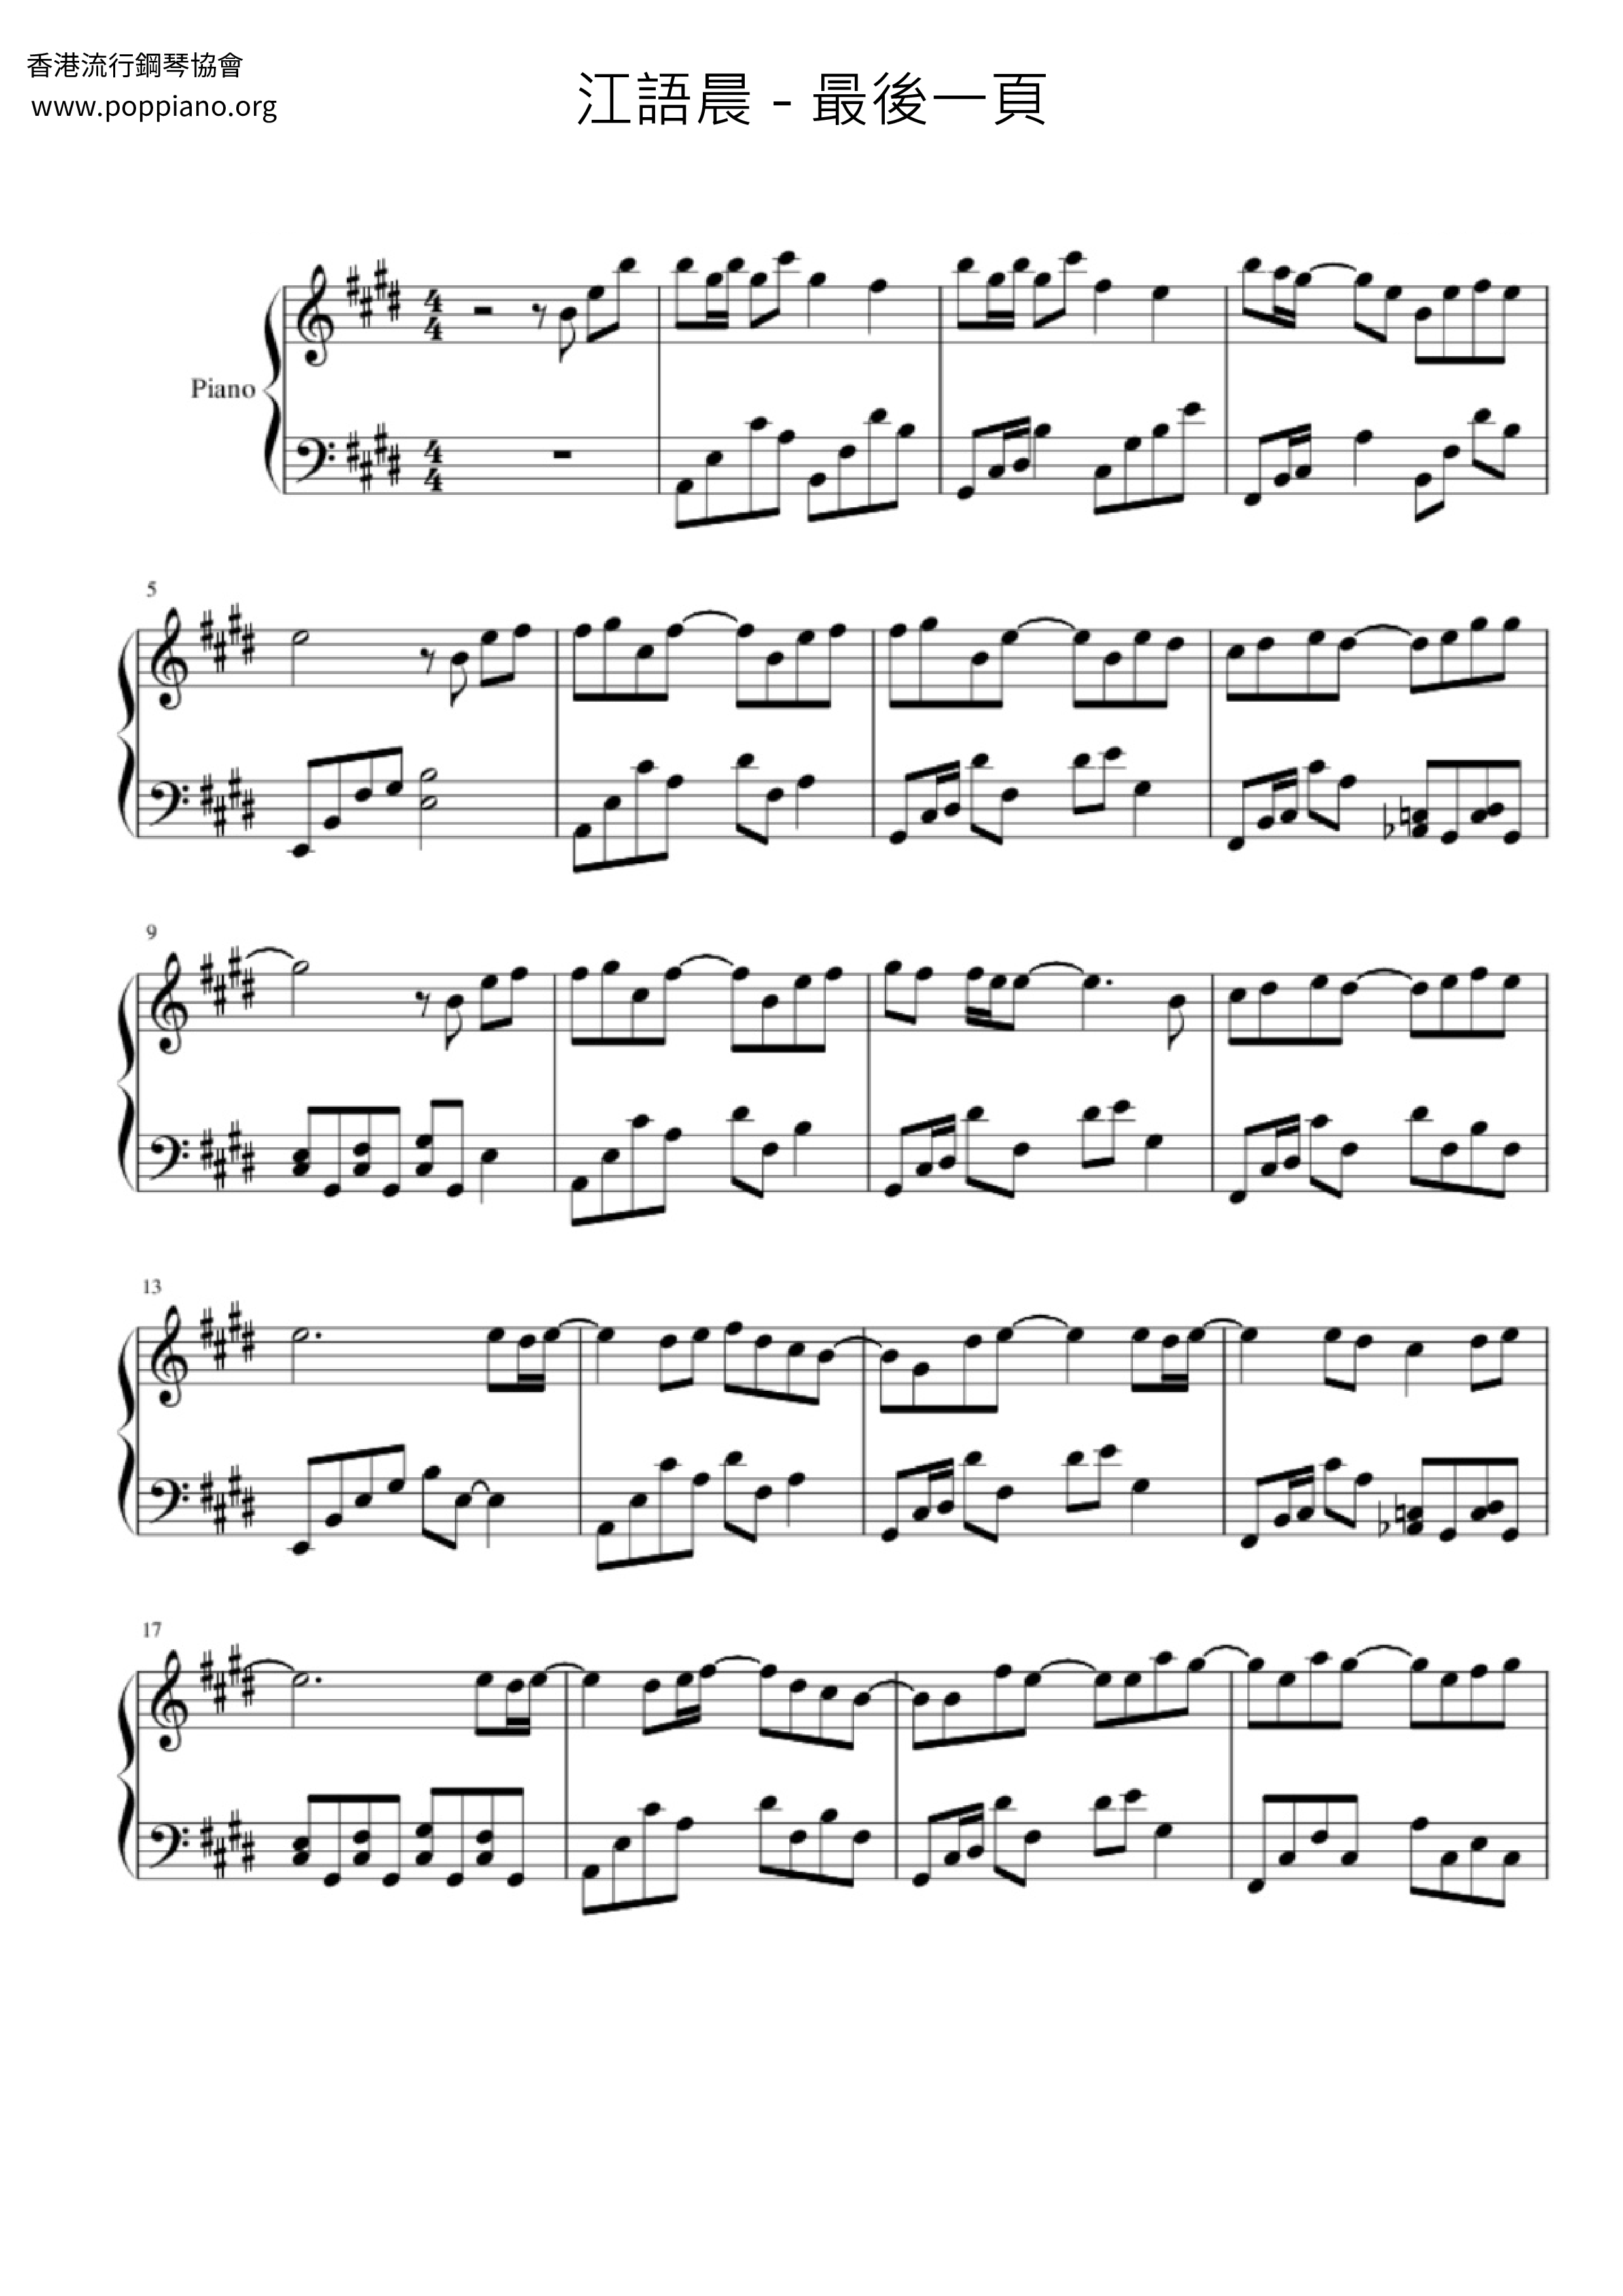 最後一頁ピアノ譜